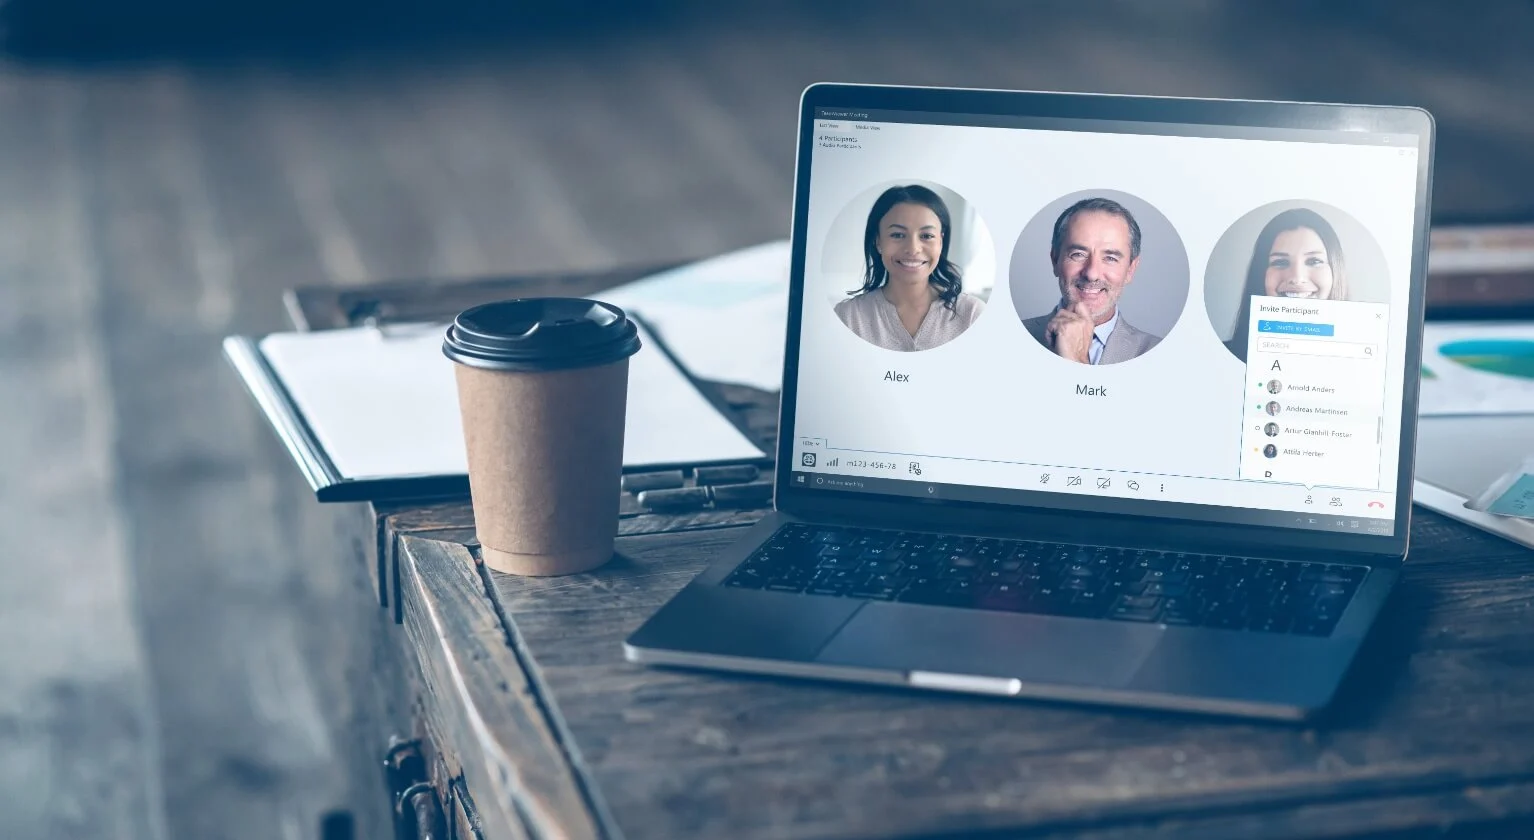 图片展示了一台笔记本电脑屏幕，上面是一个视频会议界面，有两个微笑的人物头像，旁边是一杯咖啡和一些文件。